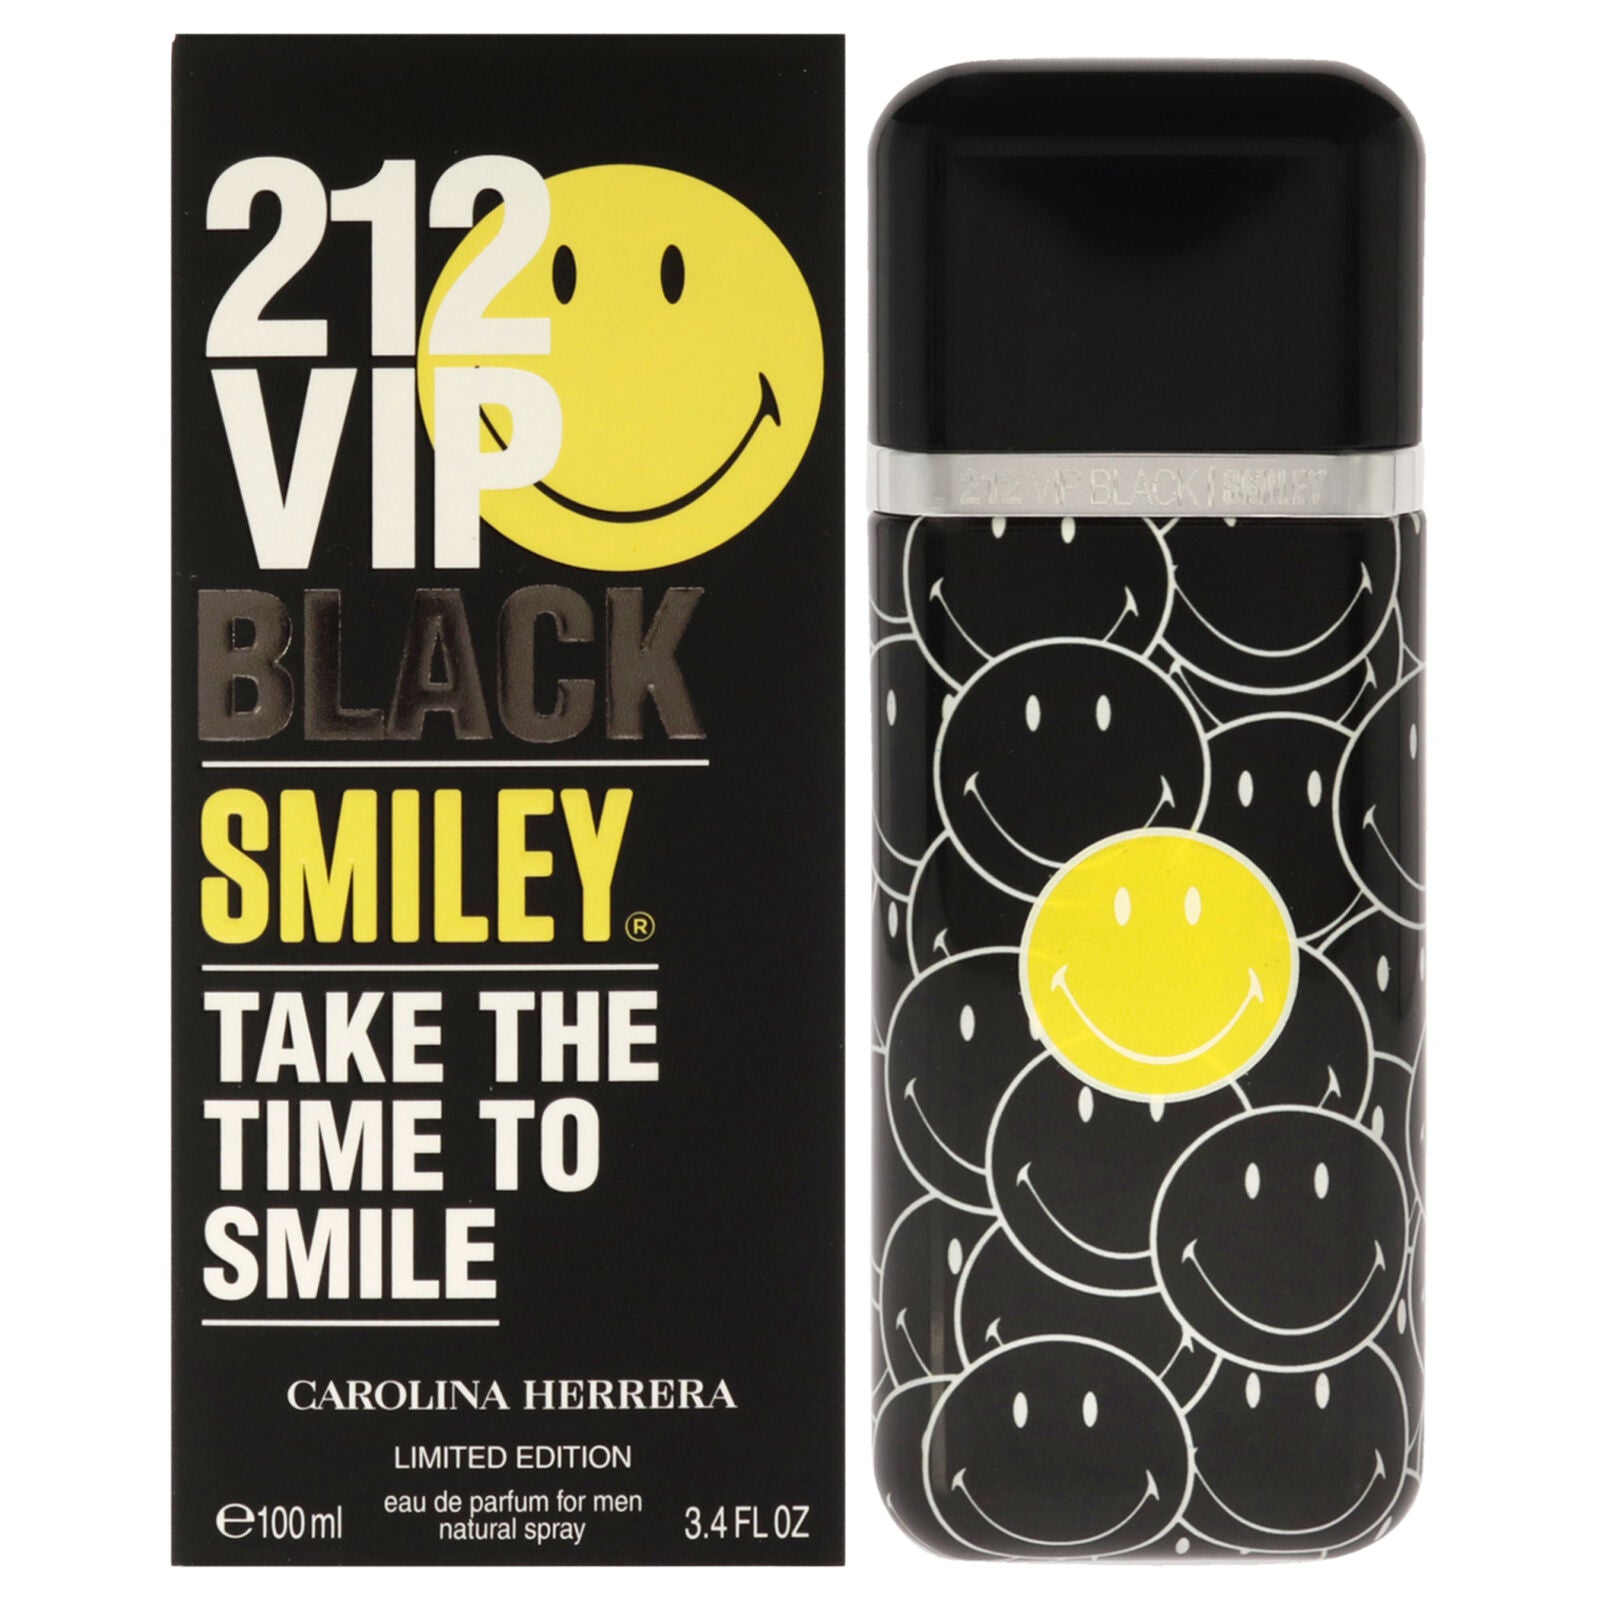 212 Vip Black Smiley By Carolina Herrera For Men 3.4 oz EDP Spray